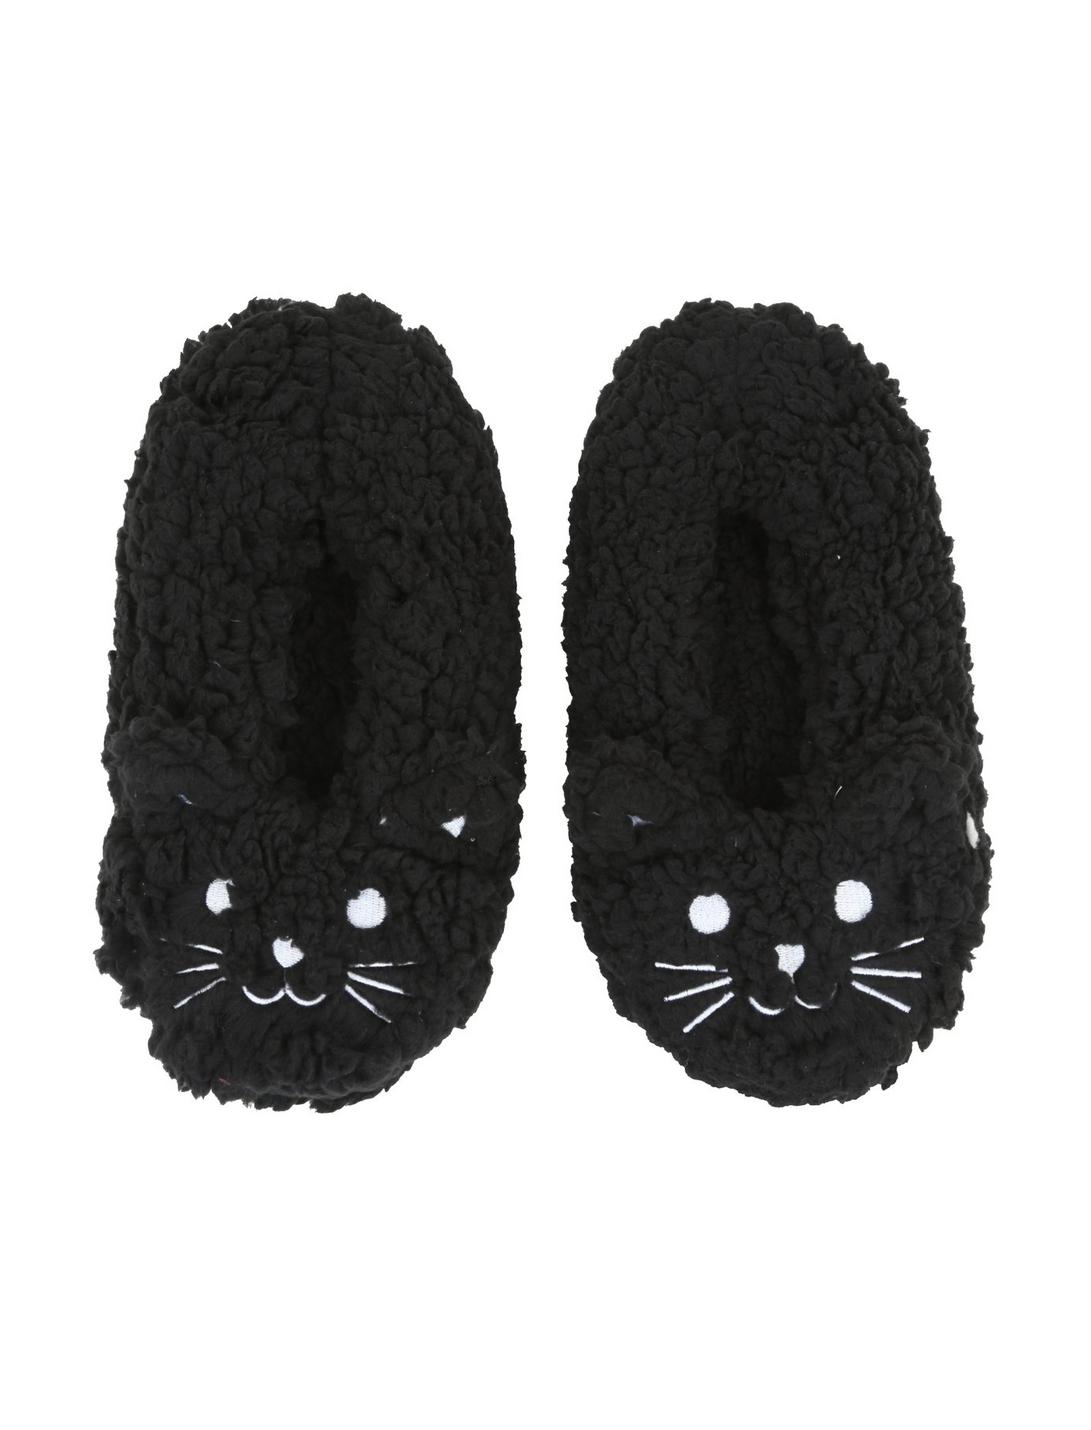 Blackheart Black Cat Cozy Slippers, BLACK, hi-res